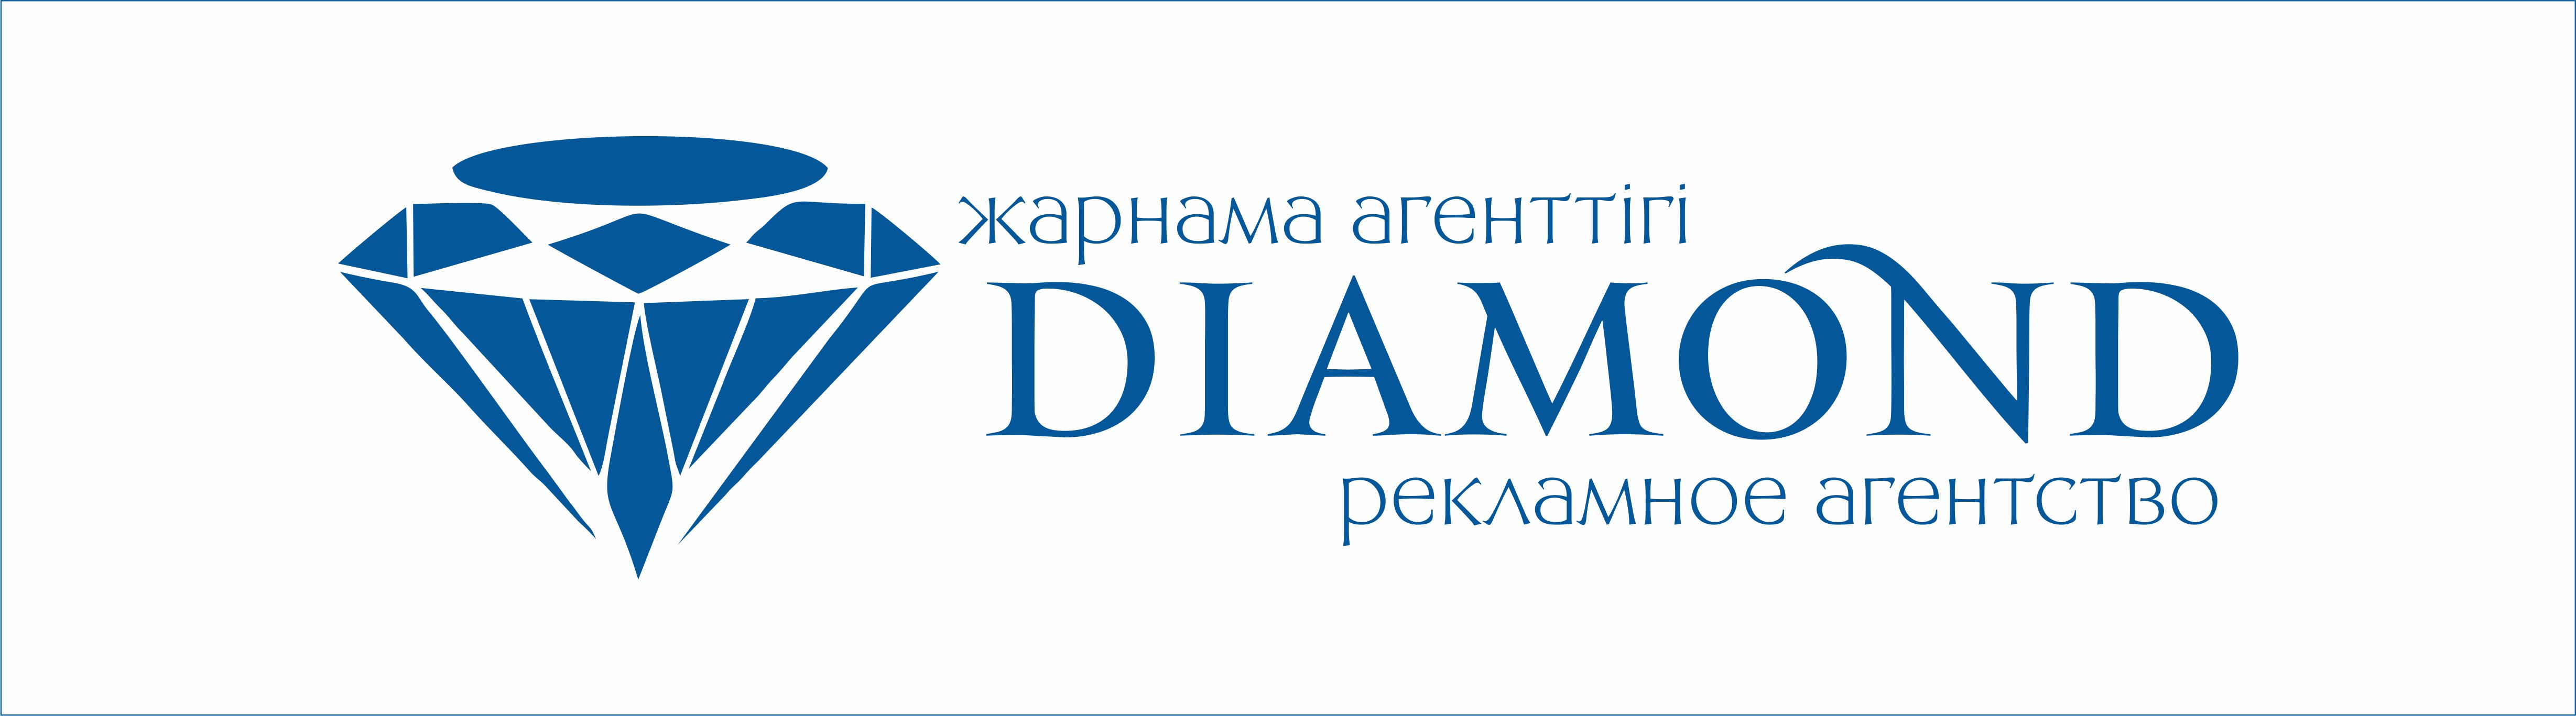 Рекламное агентство “Diamond” 